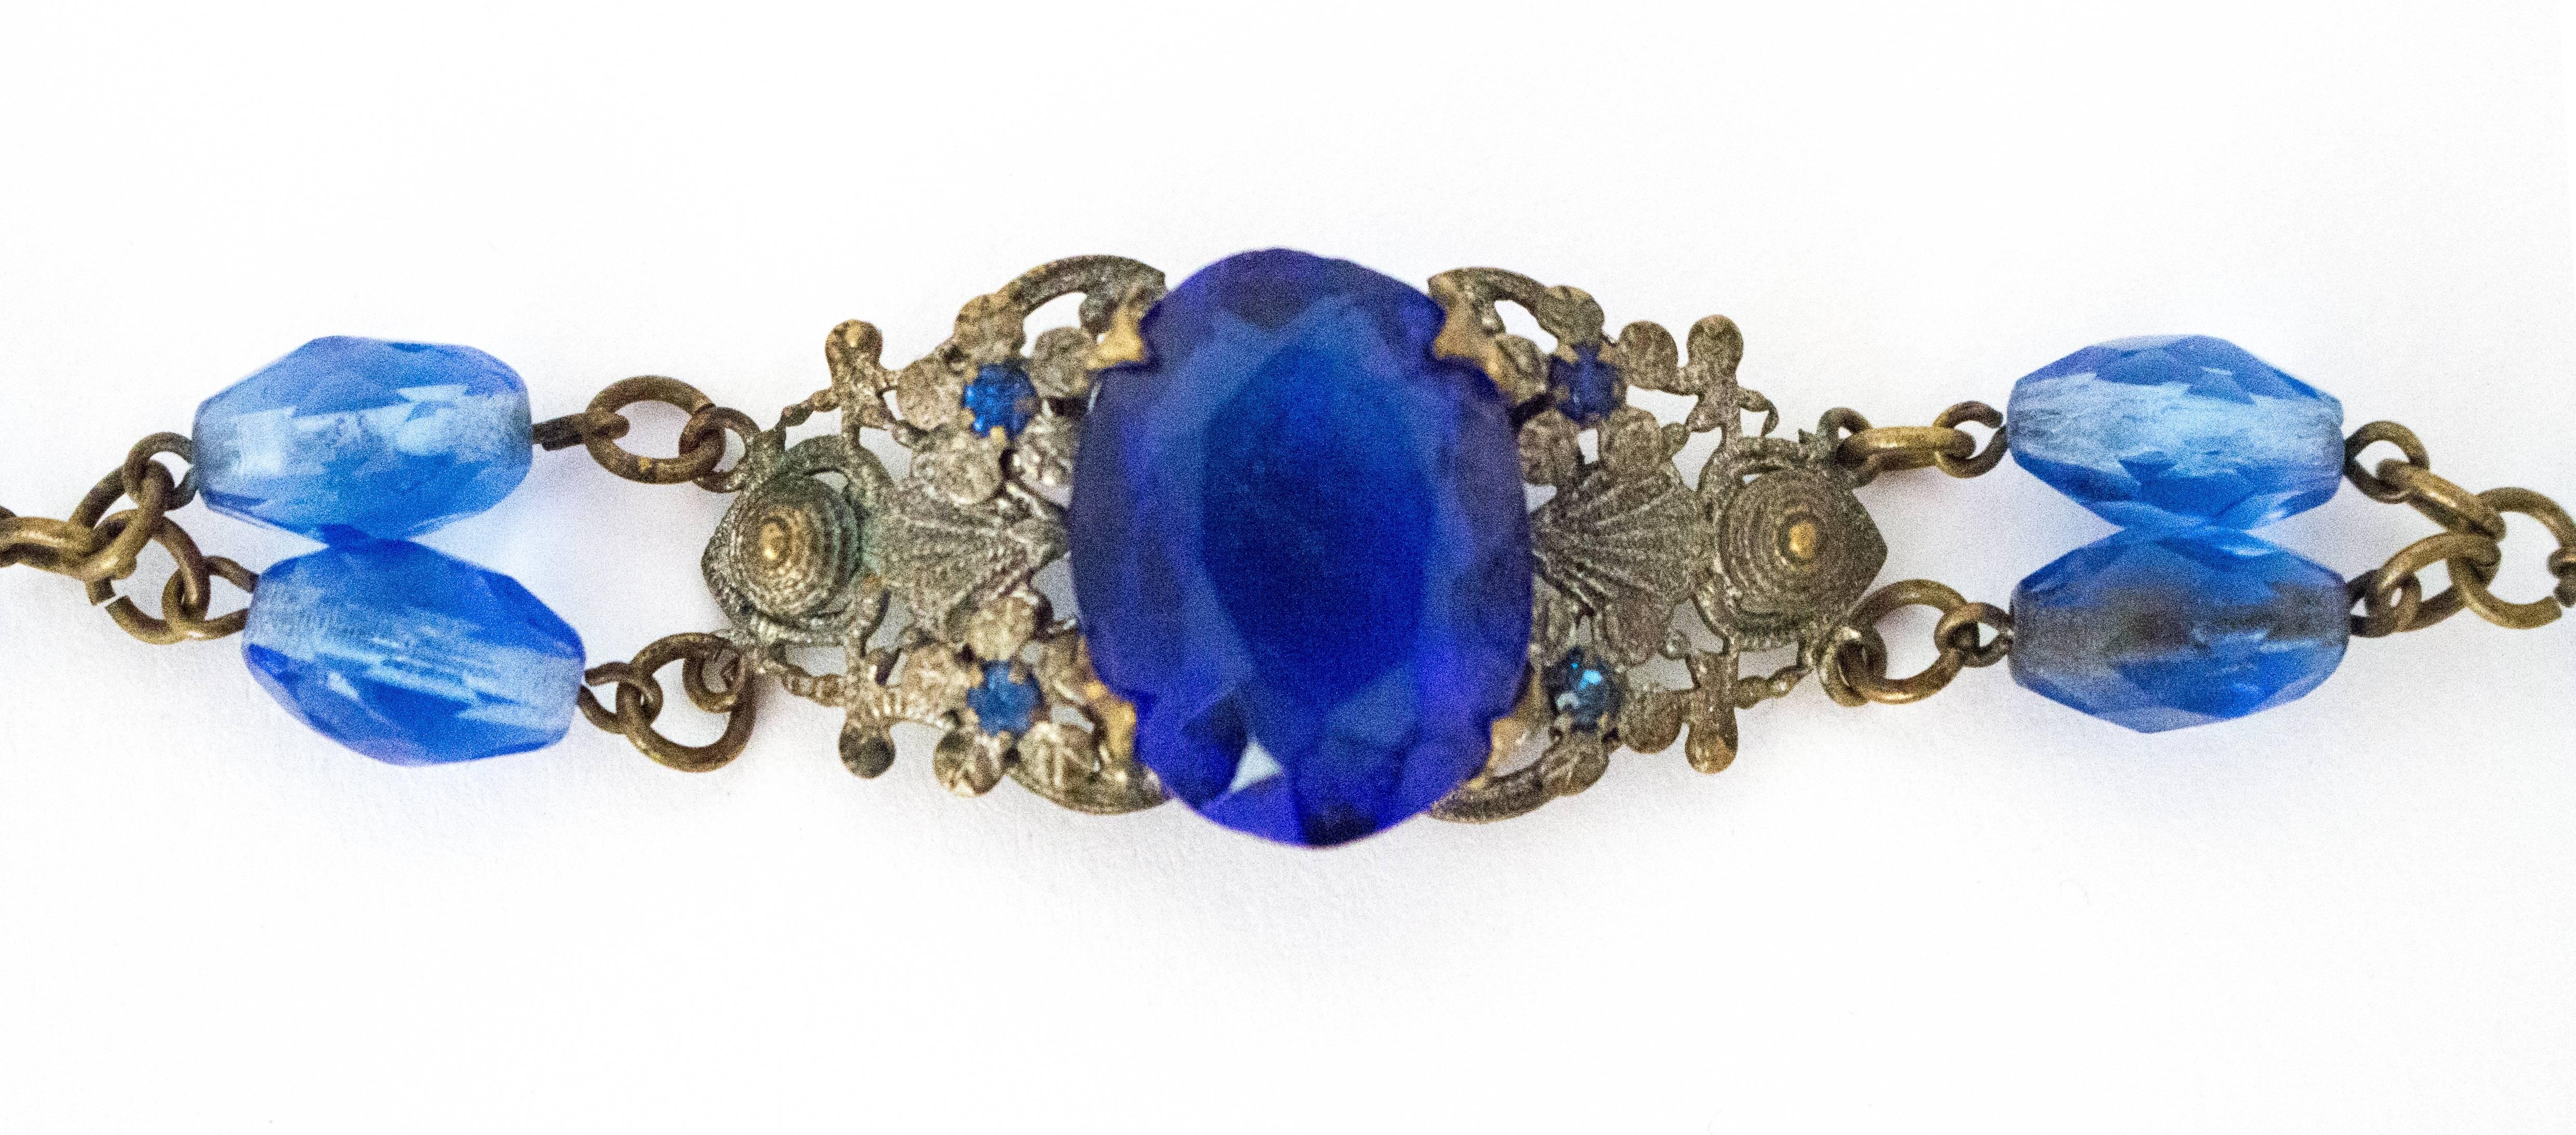 20s Blue Glass Art Nouveau Bracelet 

6 1/2